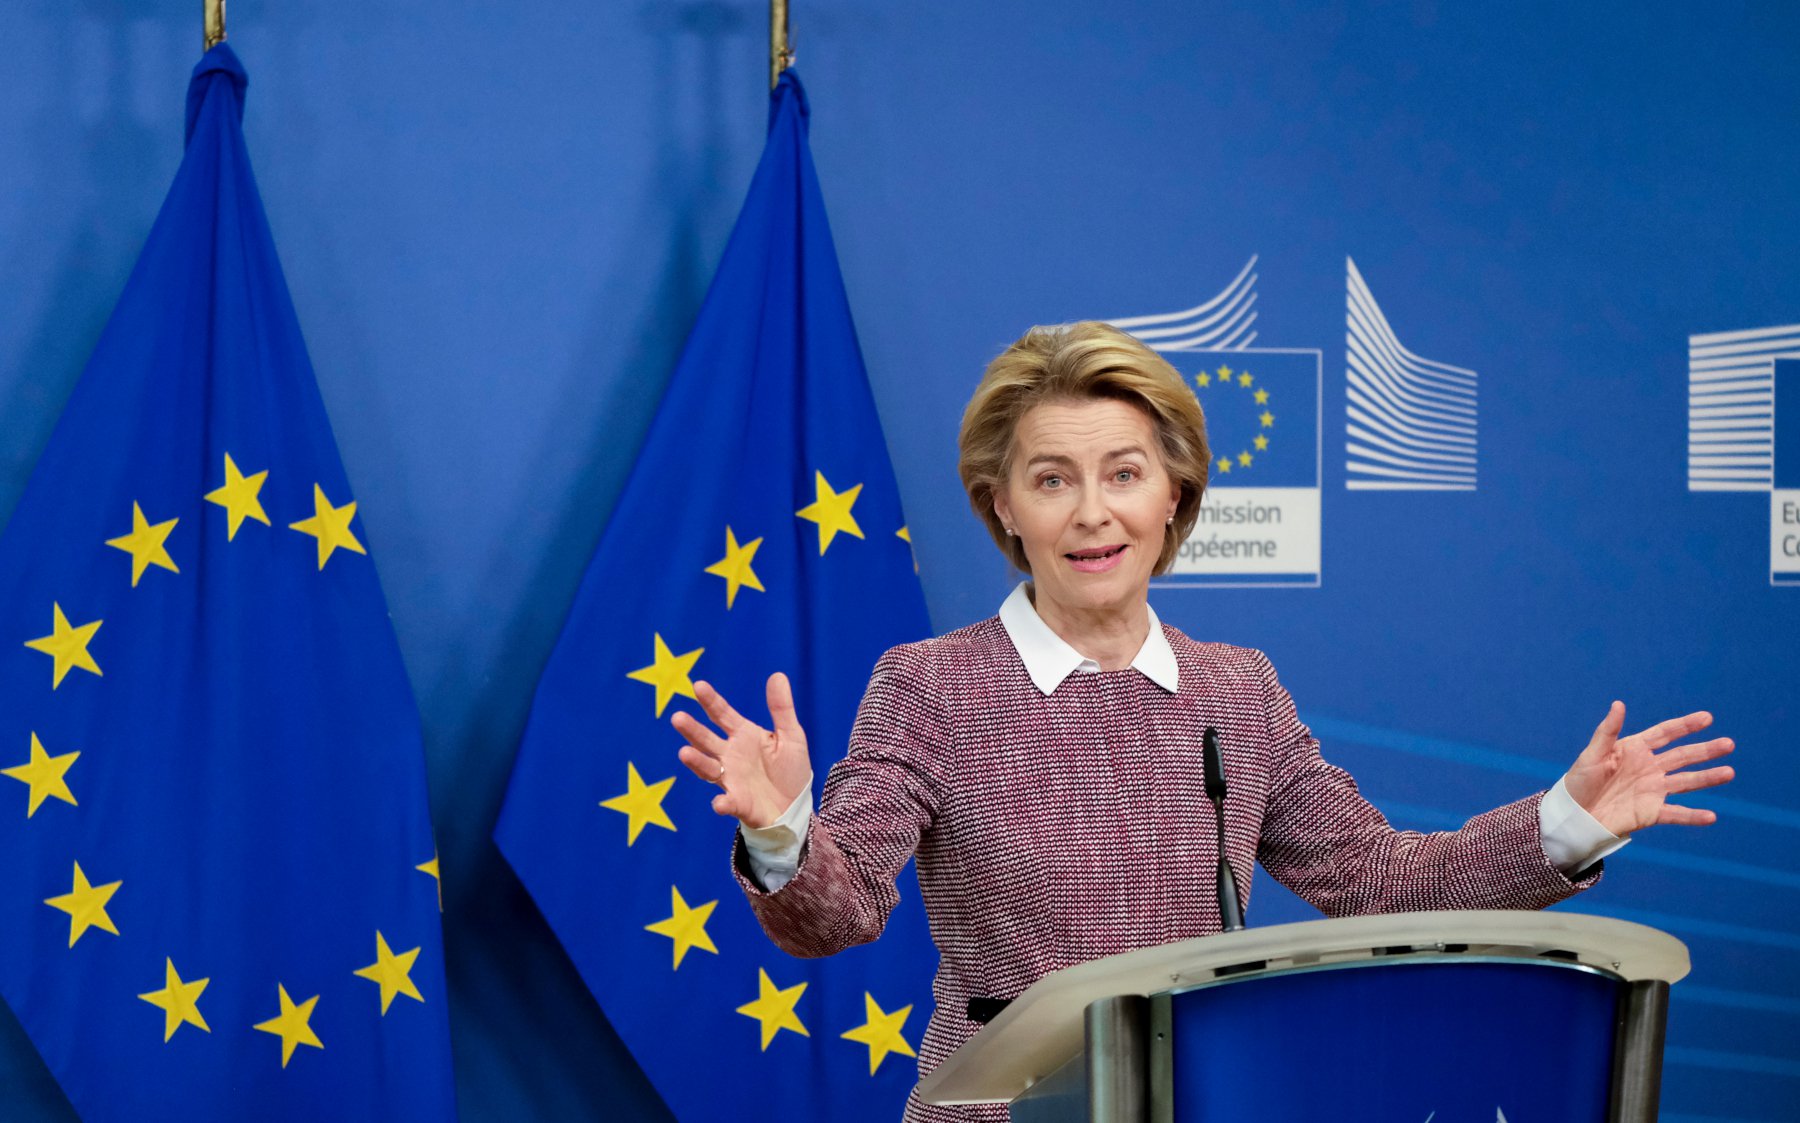 Πέφτει το παραδάκι στην Ε.Ε.: Αύξηση στους μισθούς λόγω κρίσης – Με 1.000 ευρώ τη μέρα αμείβεται η Ursula von der Leyen